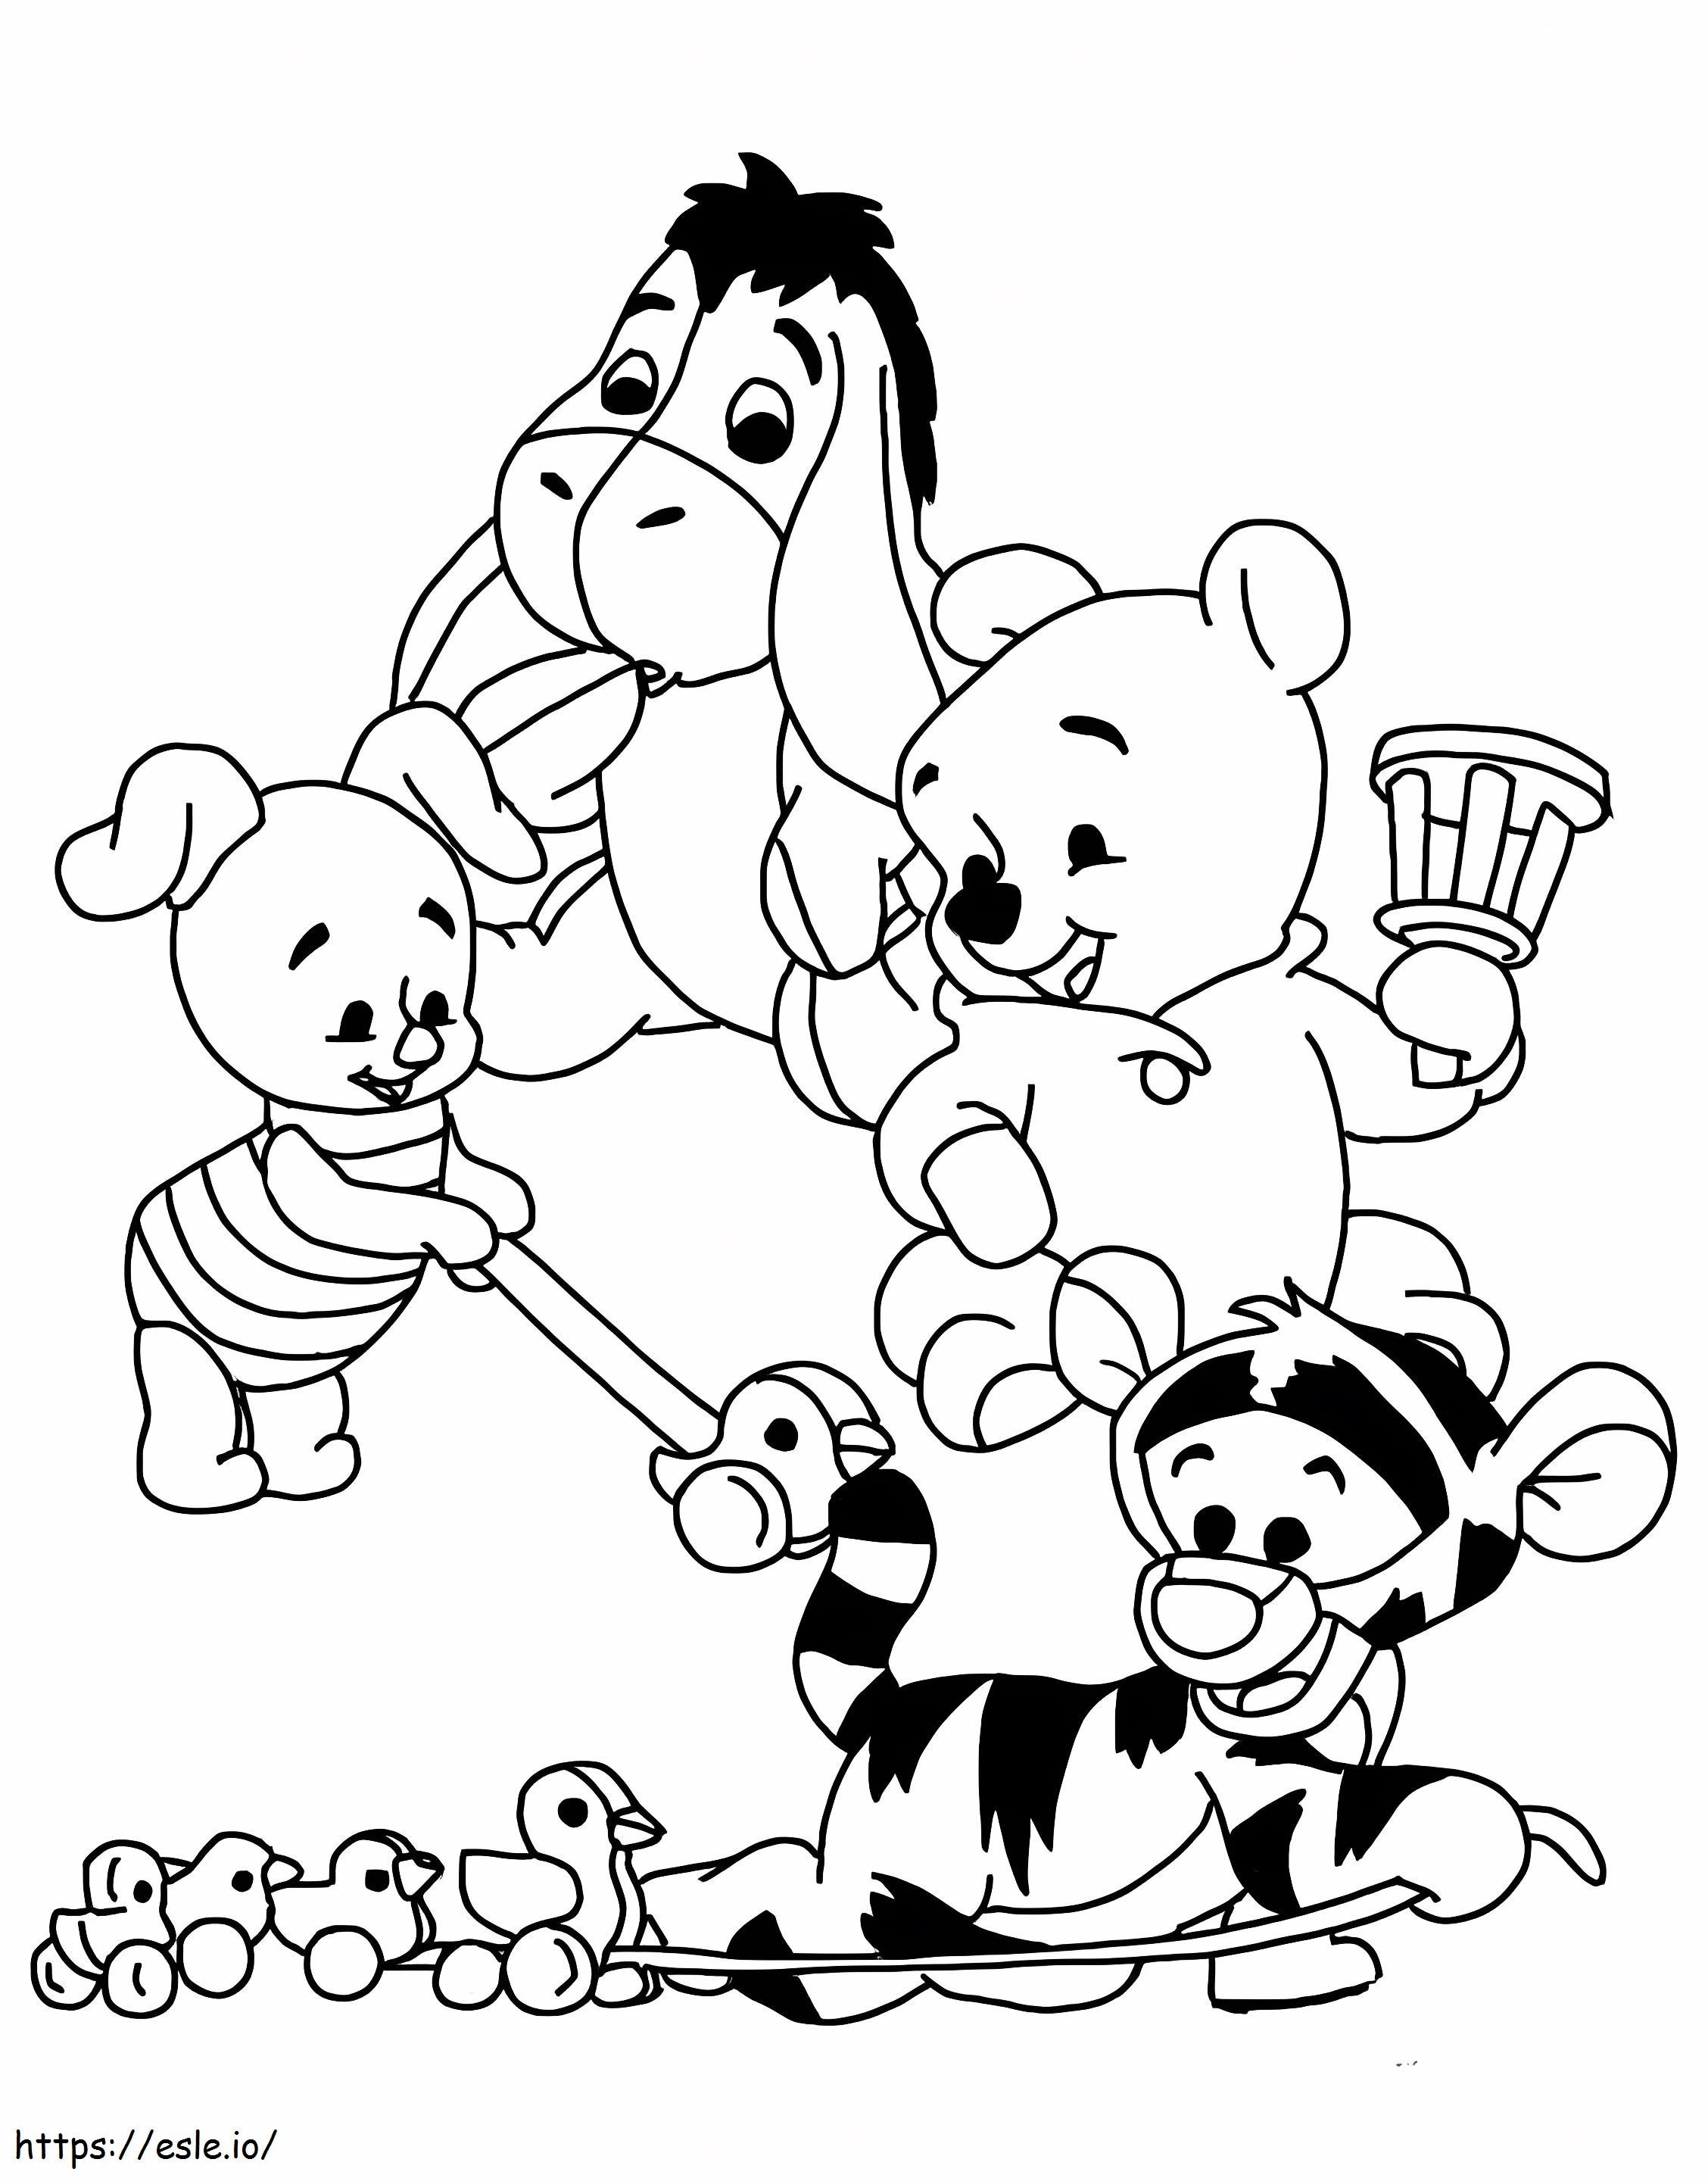 Bebeluşul Winnie The Pooh şi prietenii de colorat